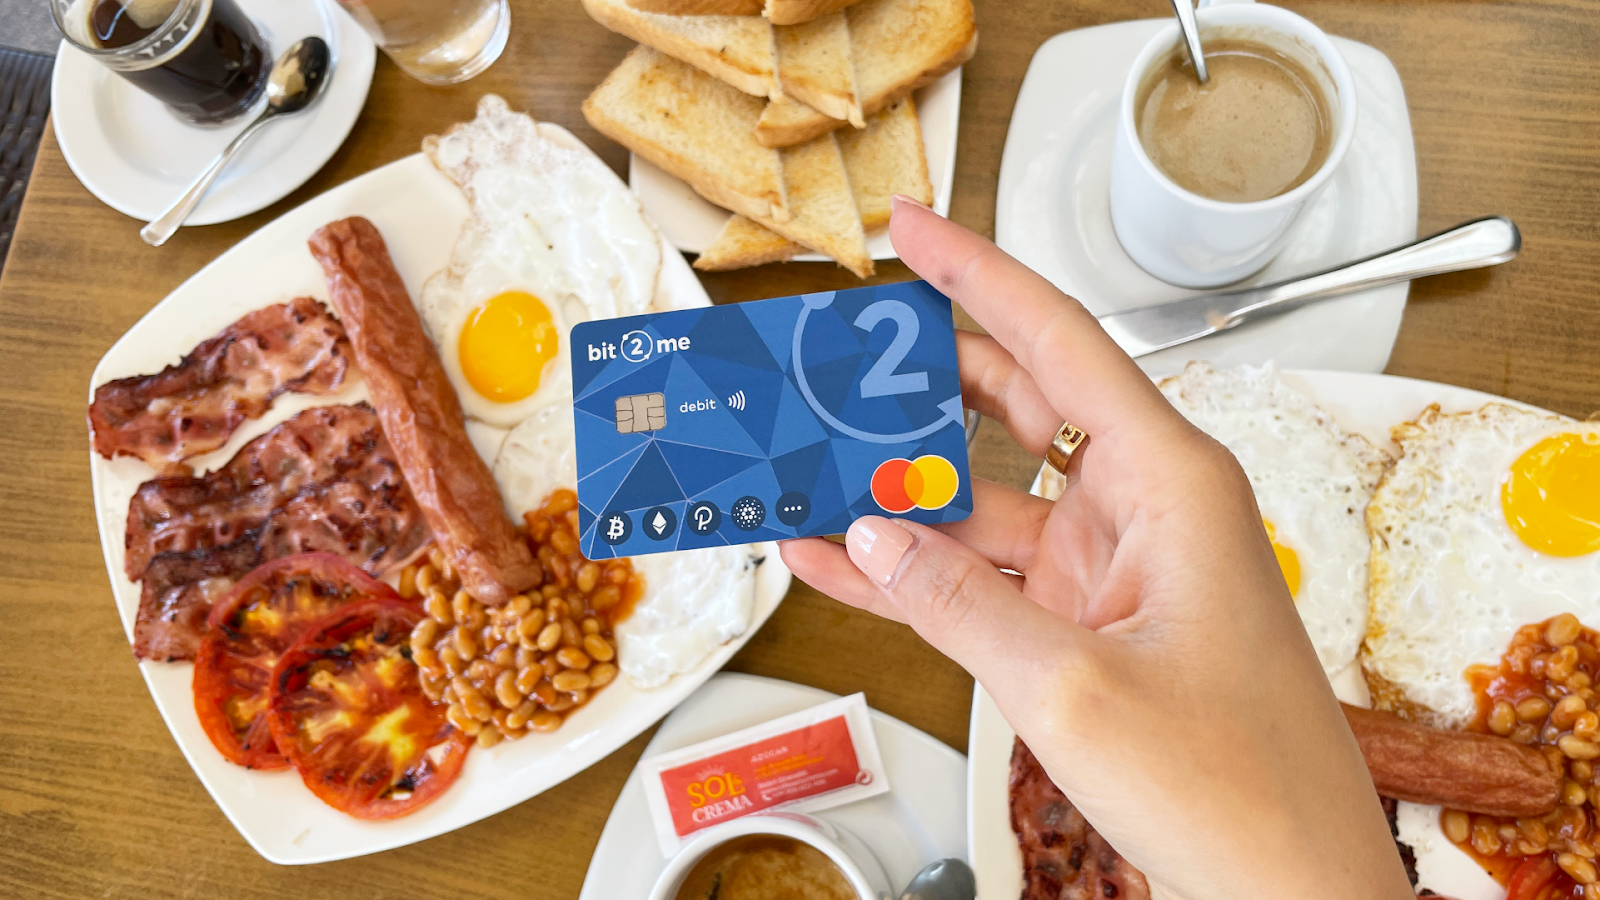 Exchange espanhola Bit2Me lança cartão de débito com programa de cashback de 9% - 1